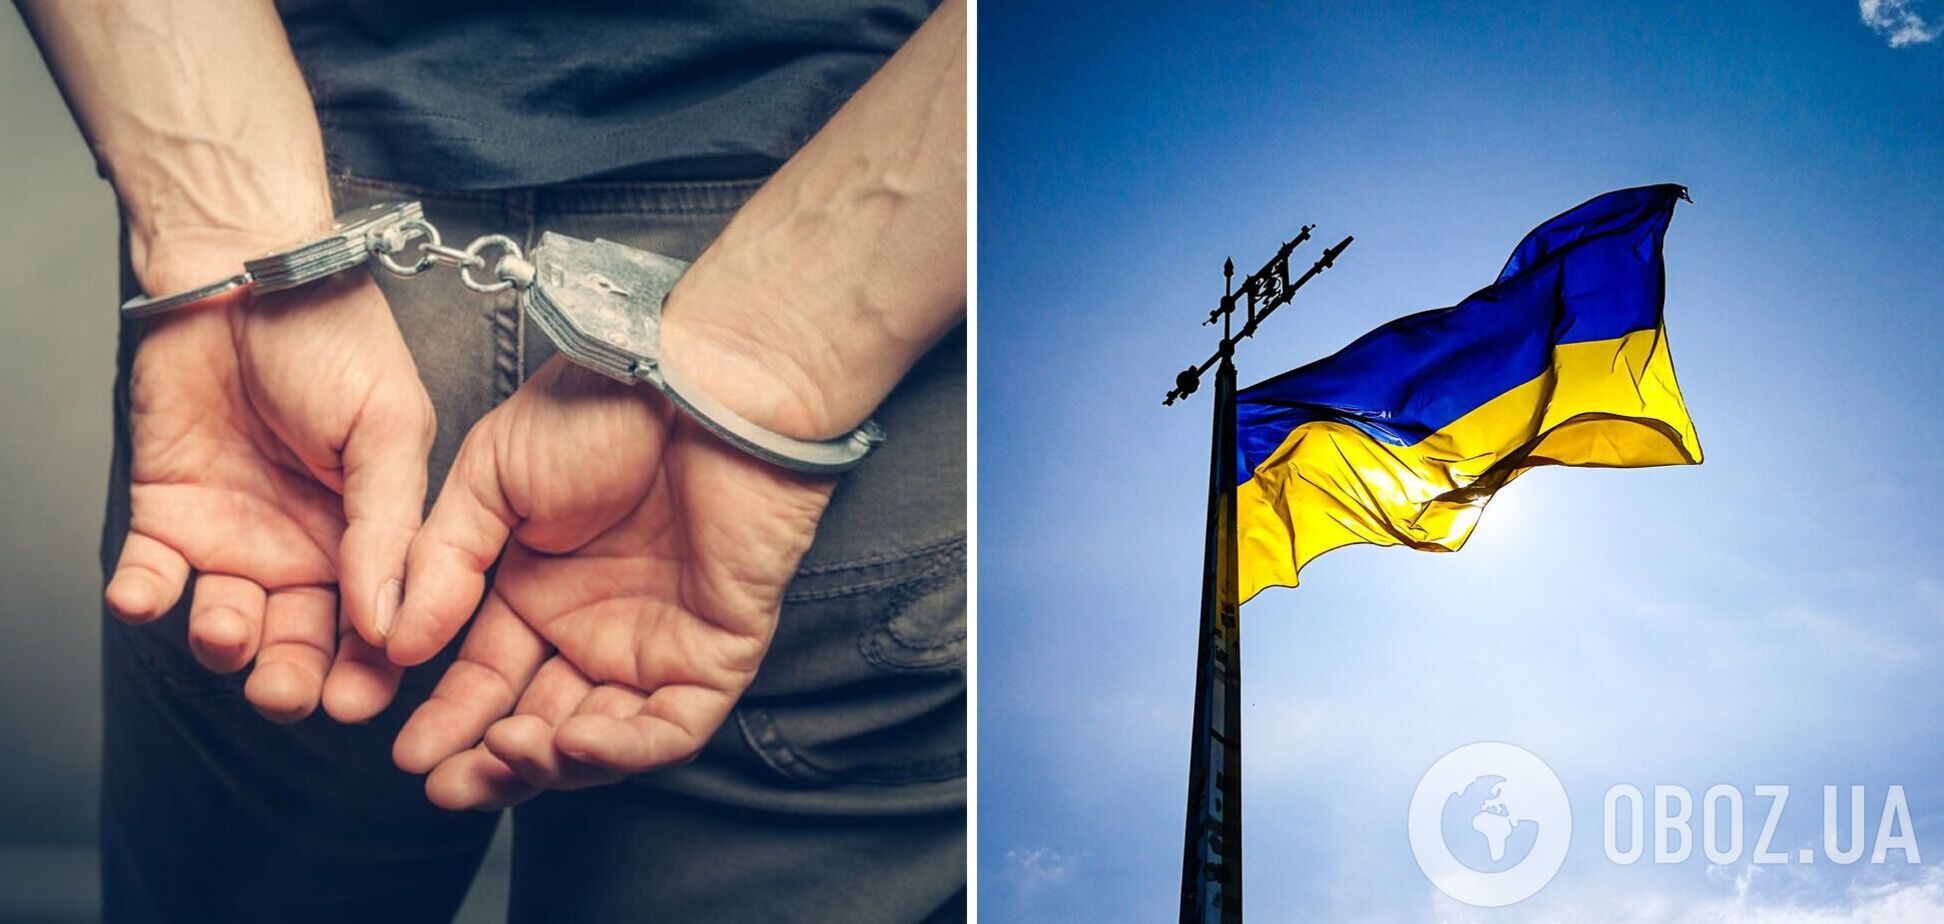 У Вінниці росіянин зняв прапор України з ТРЦ: йому загрожує до 5 років в'язниці